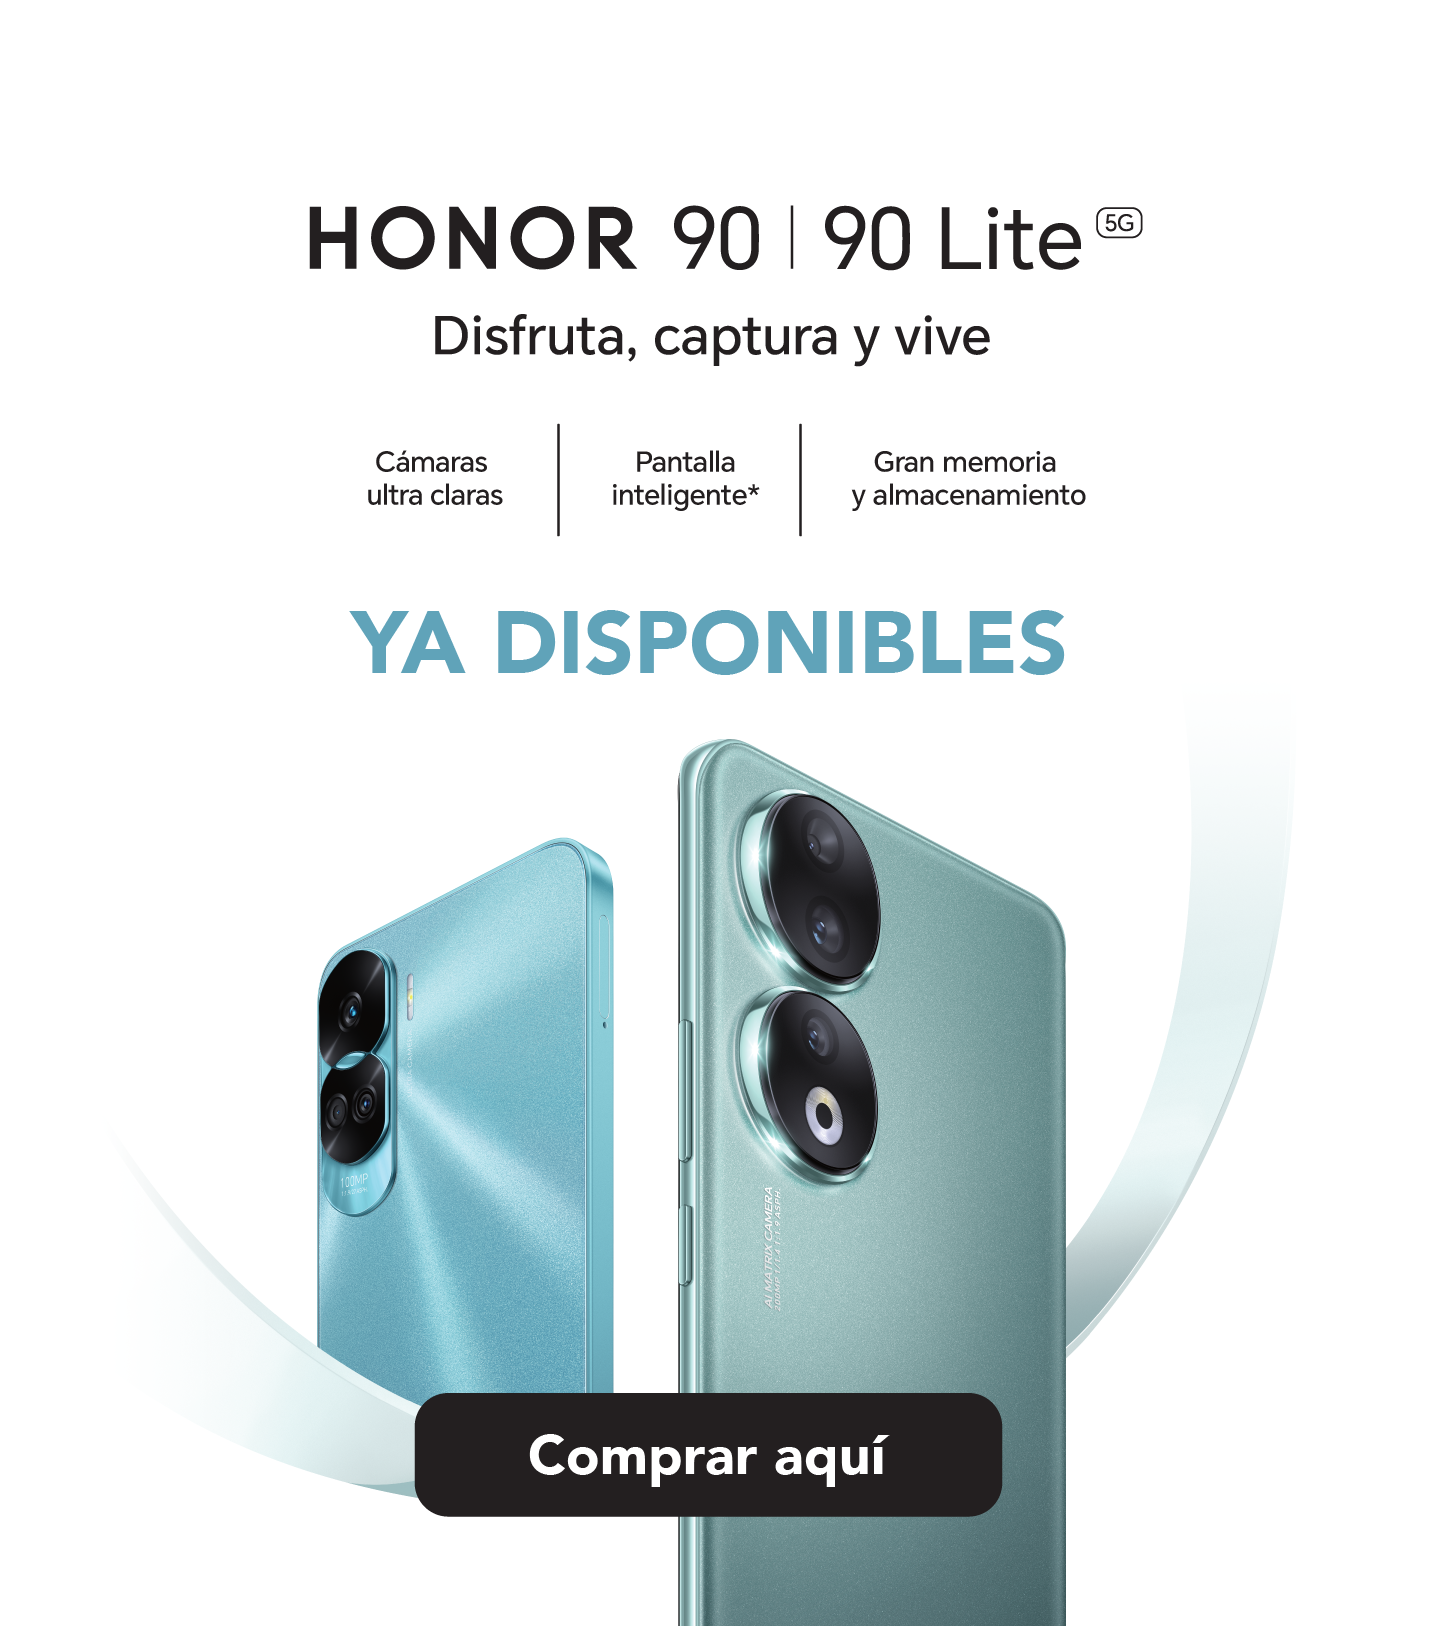 Claro Guatemala on X: ¡Tu nuevo Honor ya disponible en nuestras tiendas!  🤩📱 Adquirí el nuevo Honor 90 hoy mismo y empezá a disfrutar de tu nuevo  smartphone de 512GB🥳  /